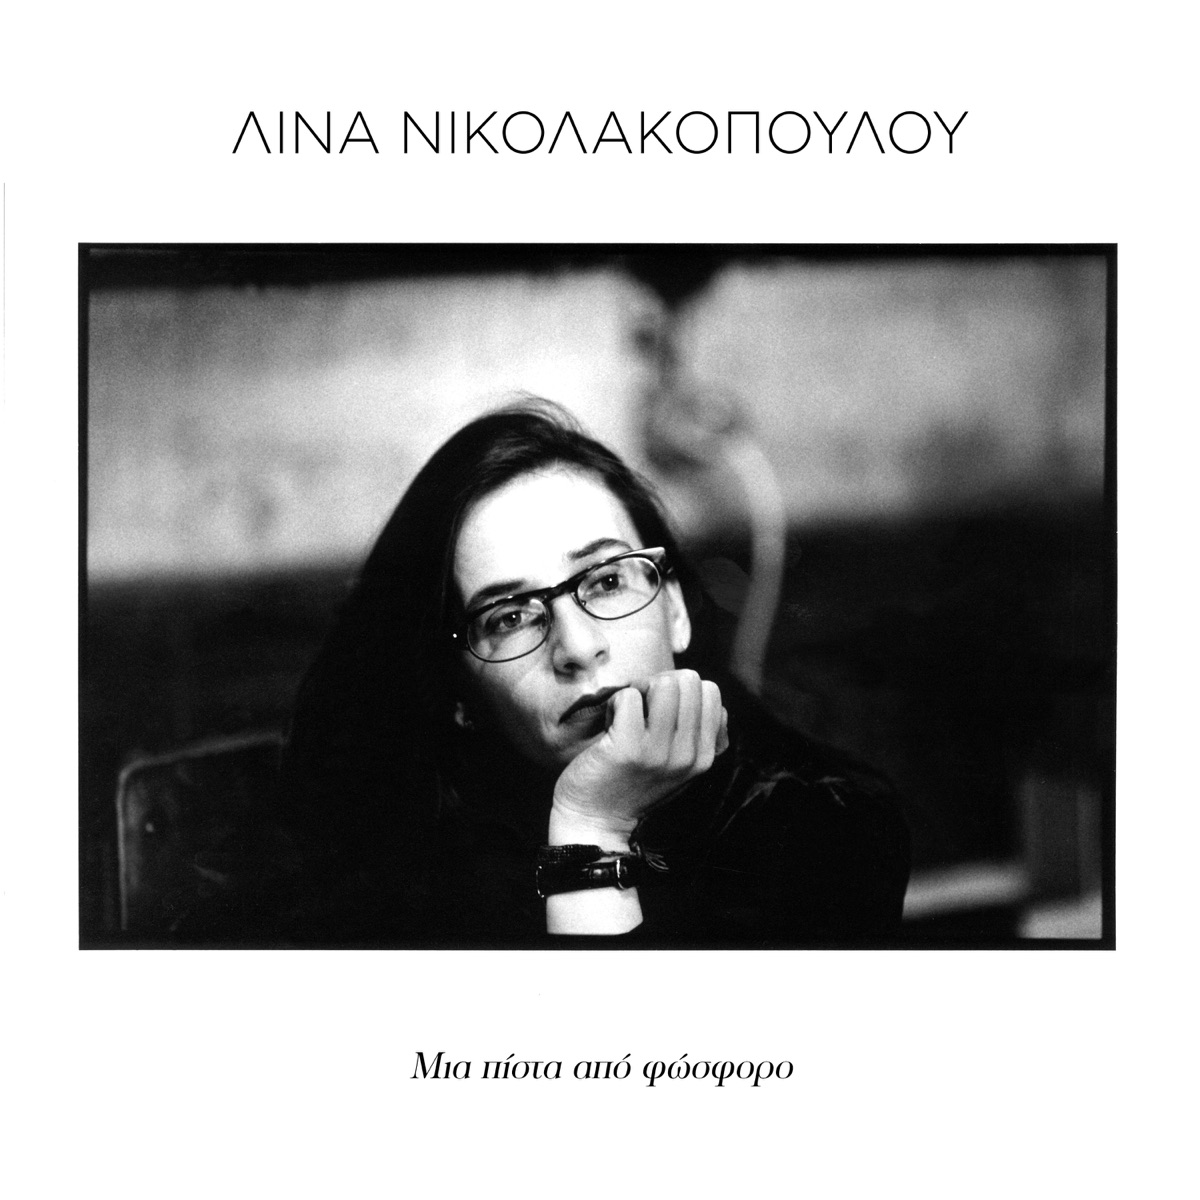 Mia Pista Apo Fosforo - Album by Lina Nikolakopoulou - Apple Music